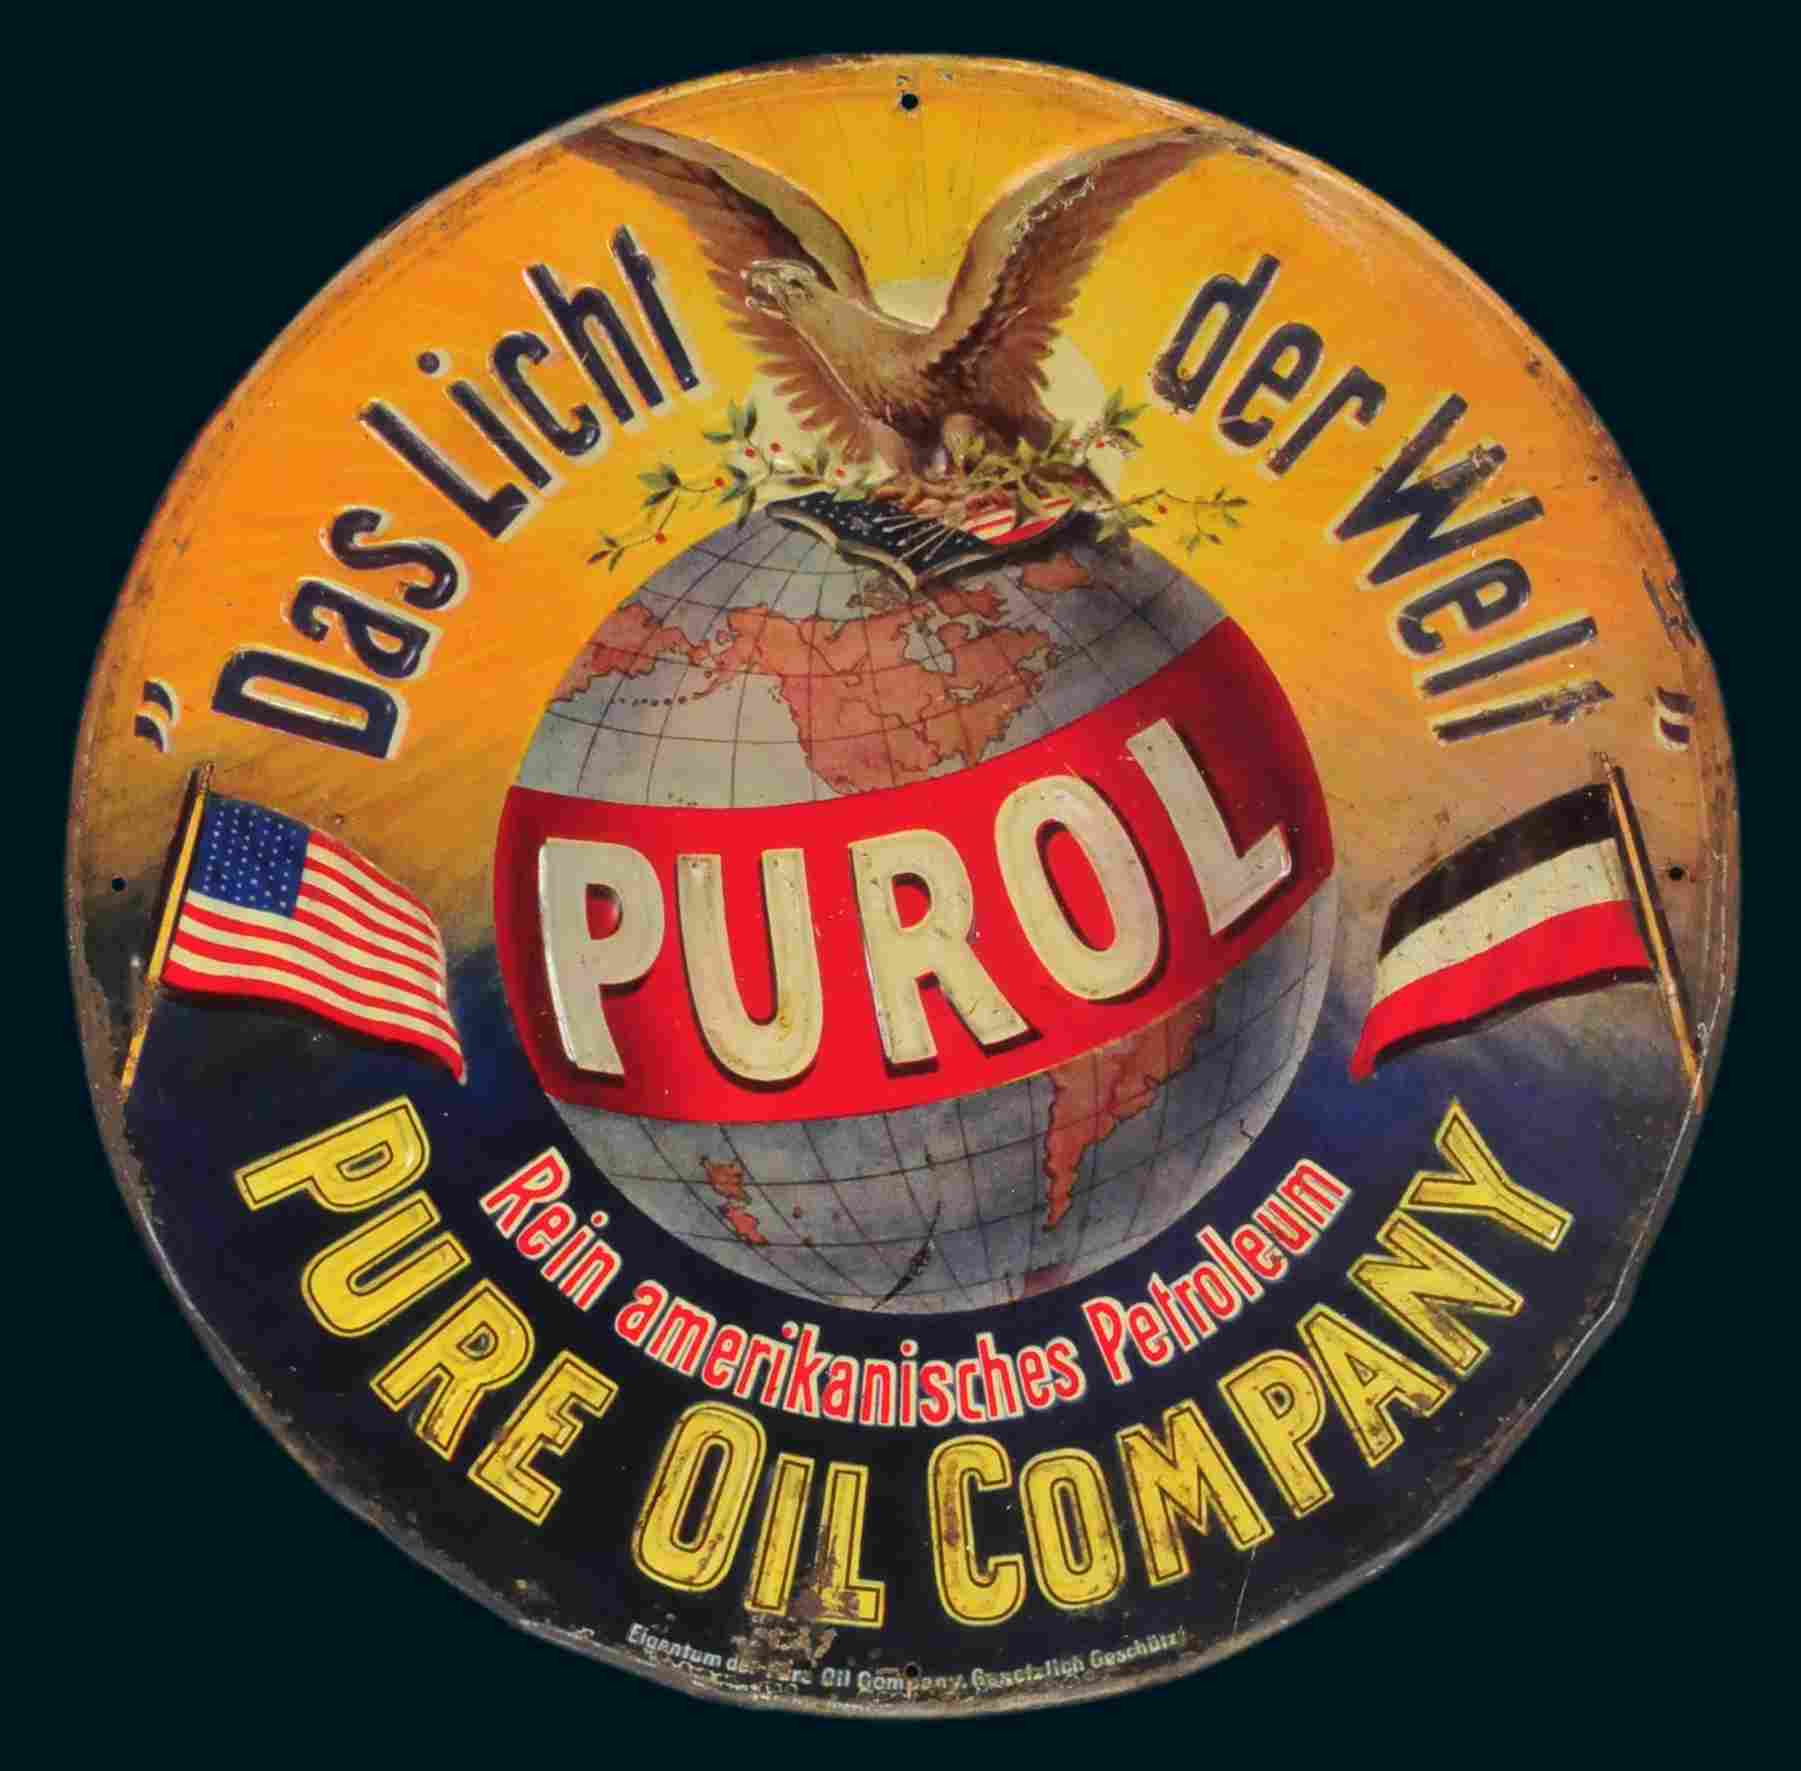 Purol Pur Oil Company 